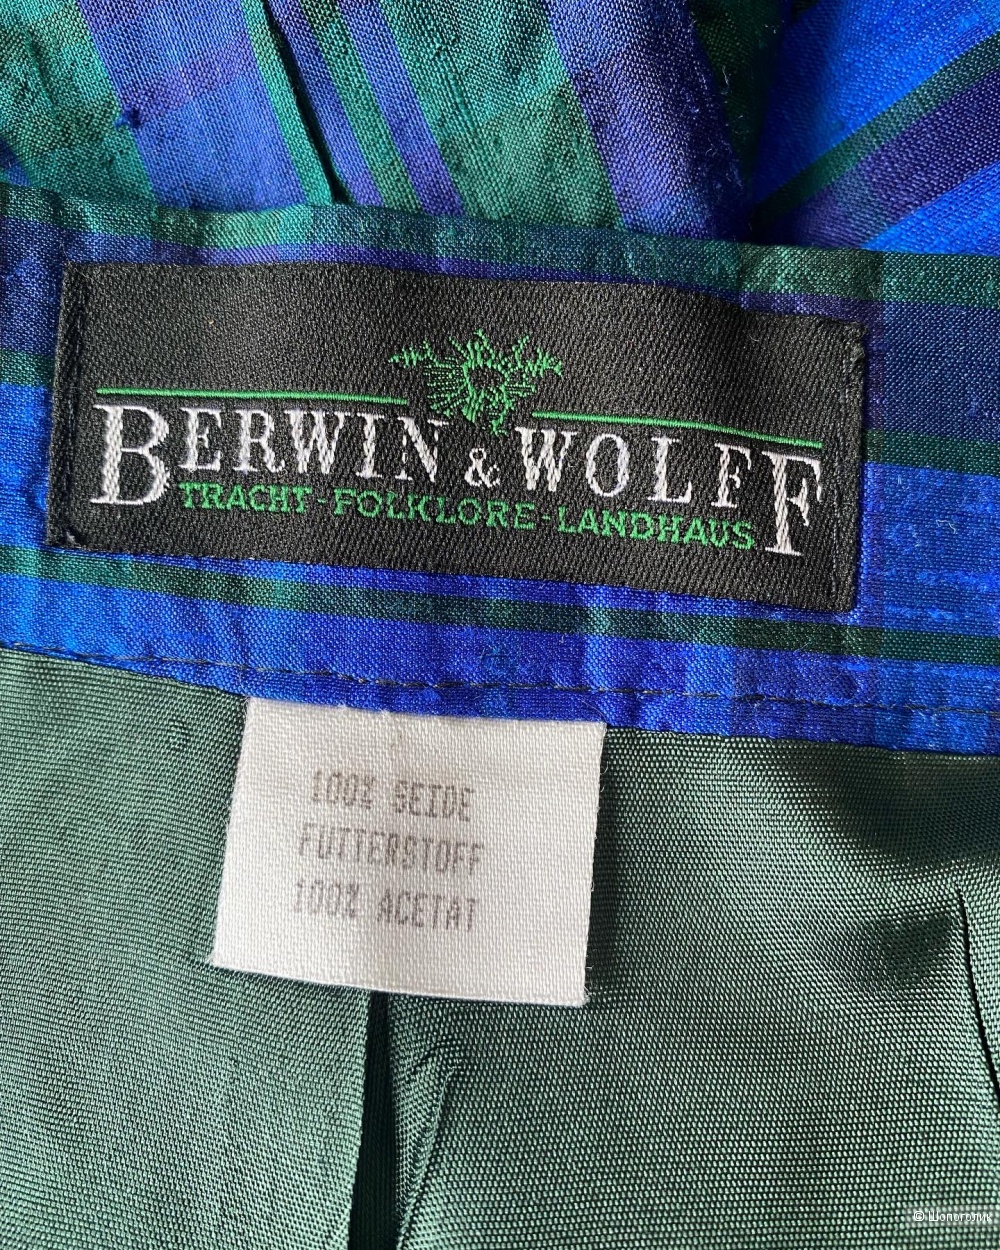 Шелковая юбка Berwin&Wolff evr.40